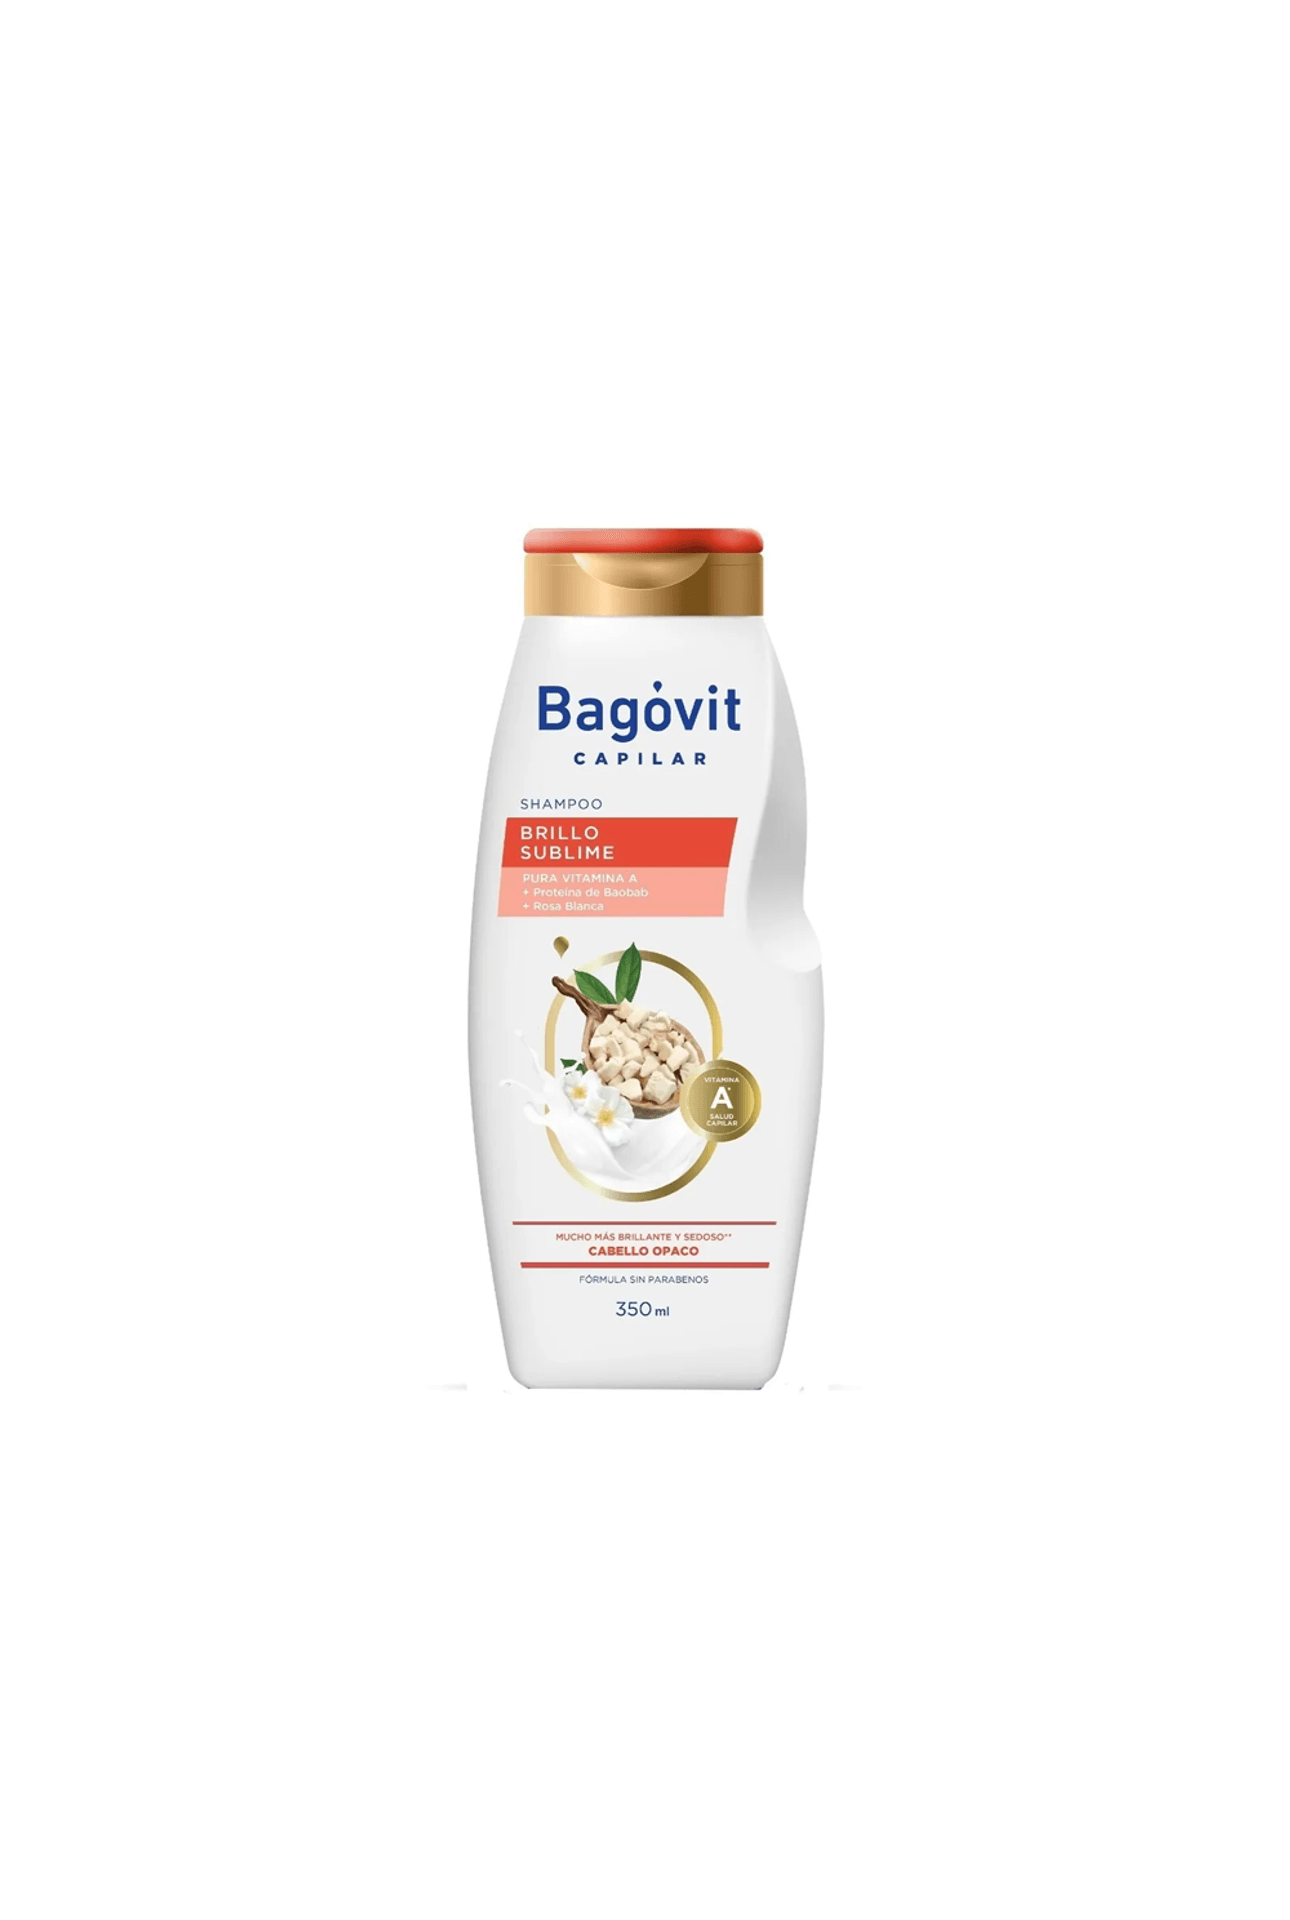 Bagovit-Shampoo-Bagovit-Capilar-Brillo-Sublime-x-350ml-7790375269661_img1